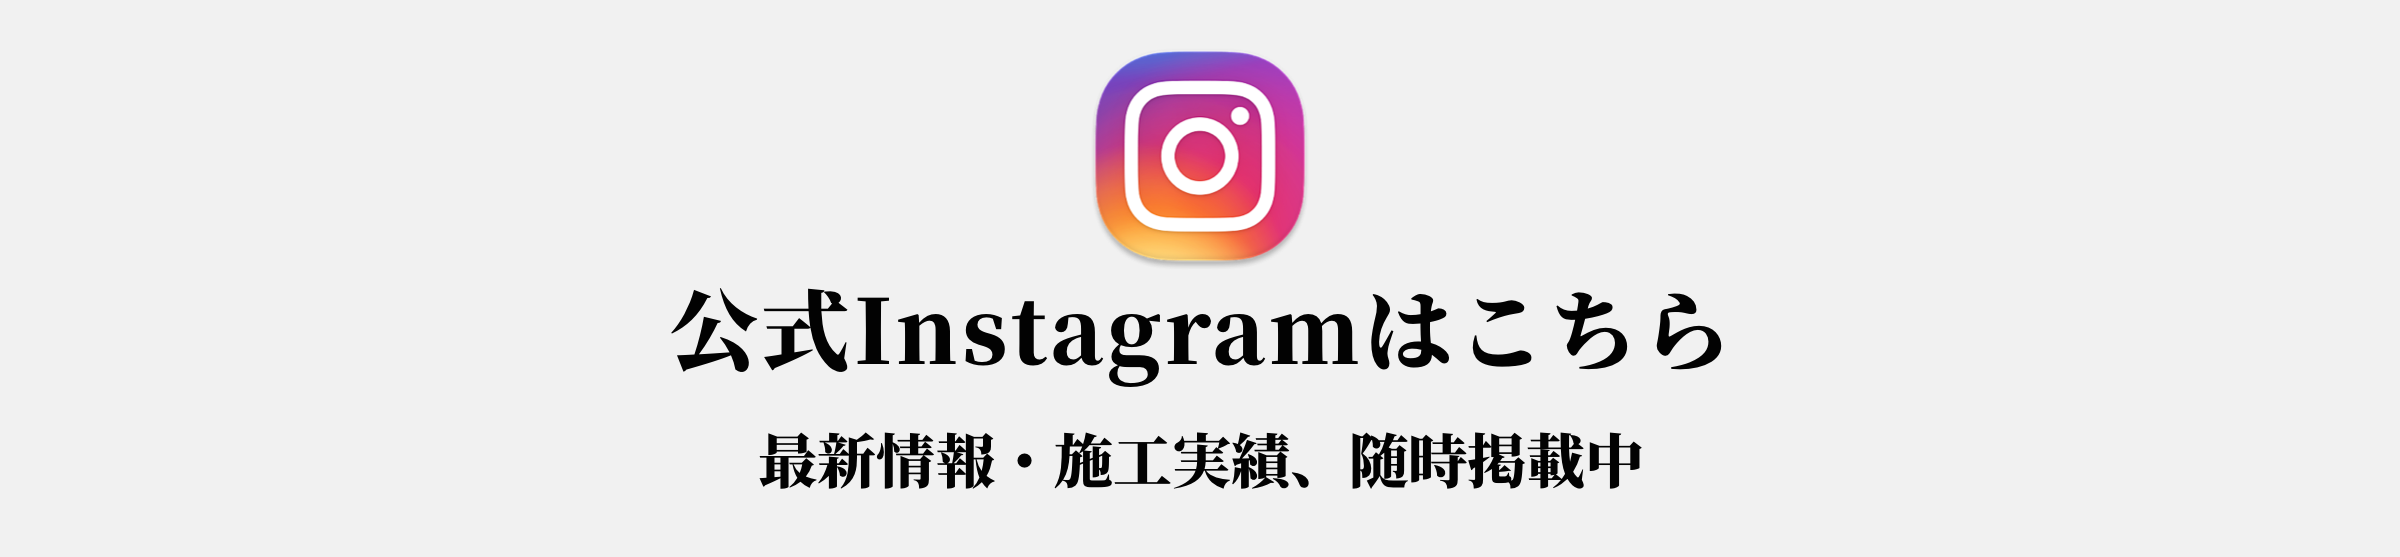 公式Instagramはこちら、最新情報・施工実績、随時掲載中